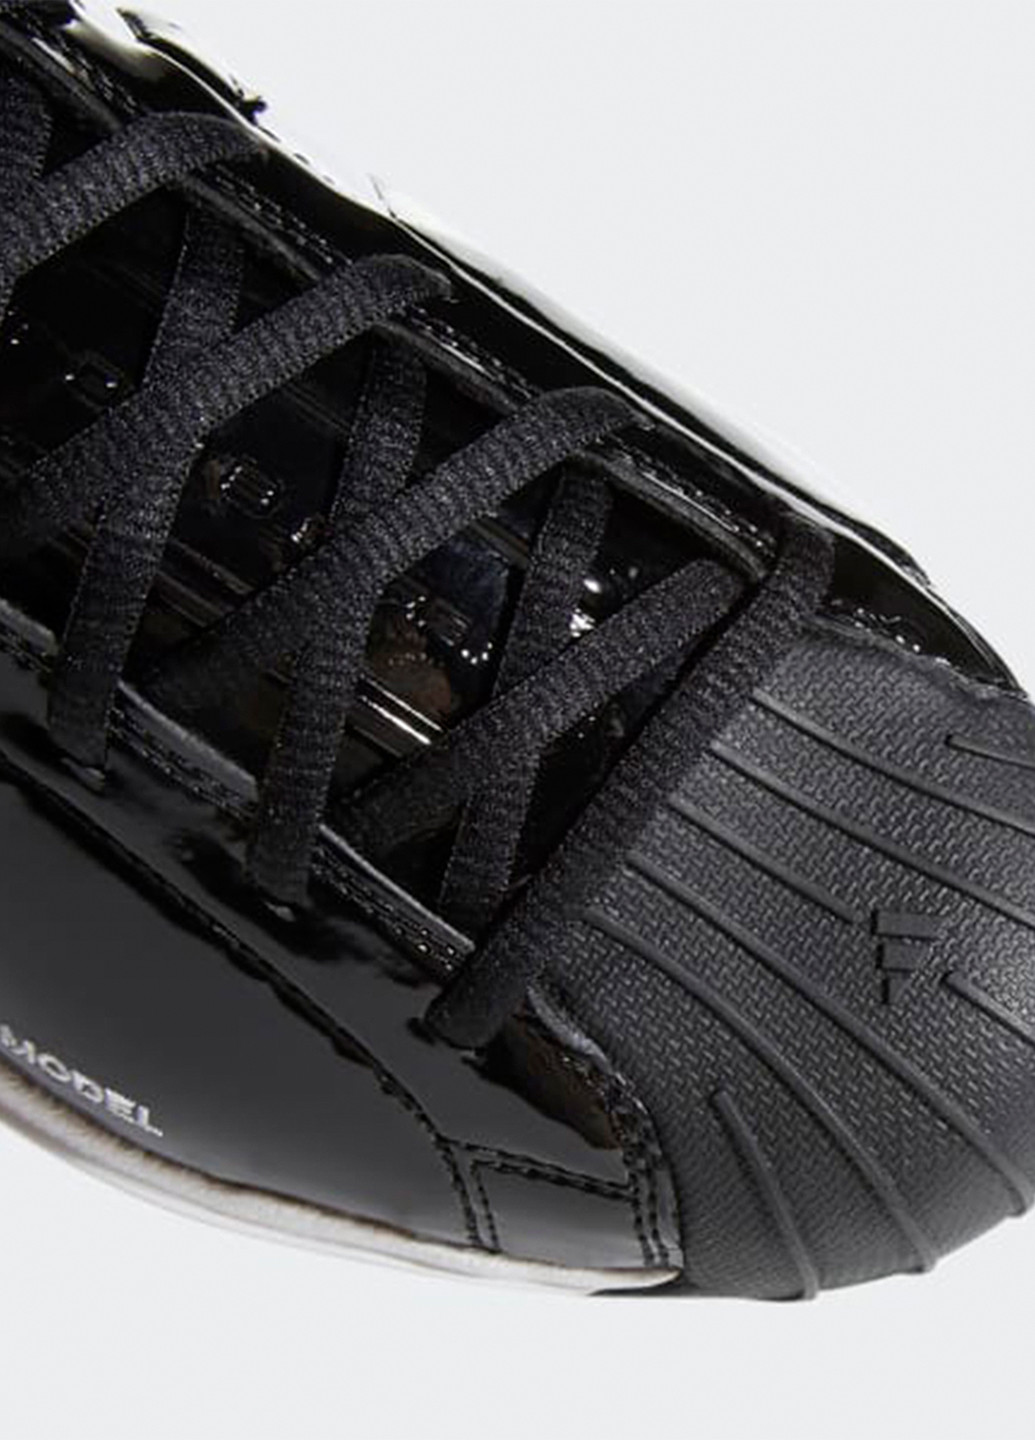 Черные всесезонные кроссовки adidas Pro Model 2G